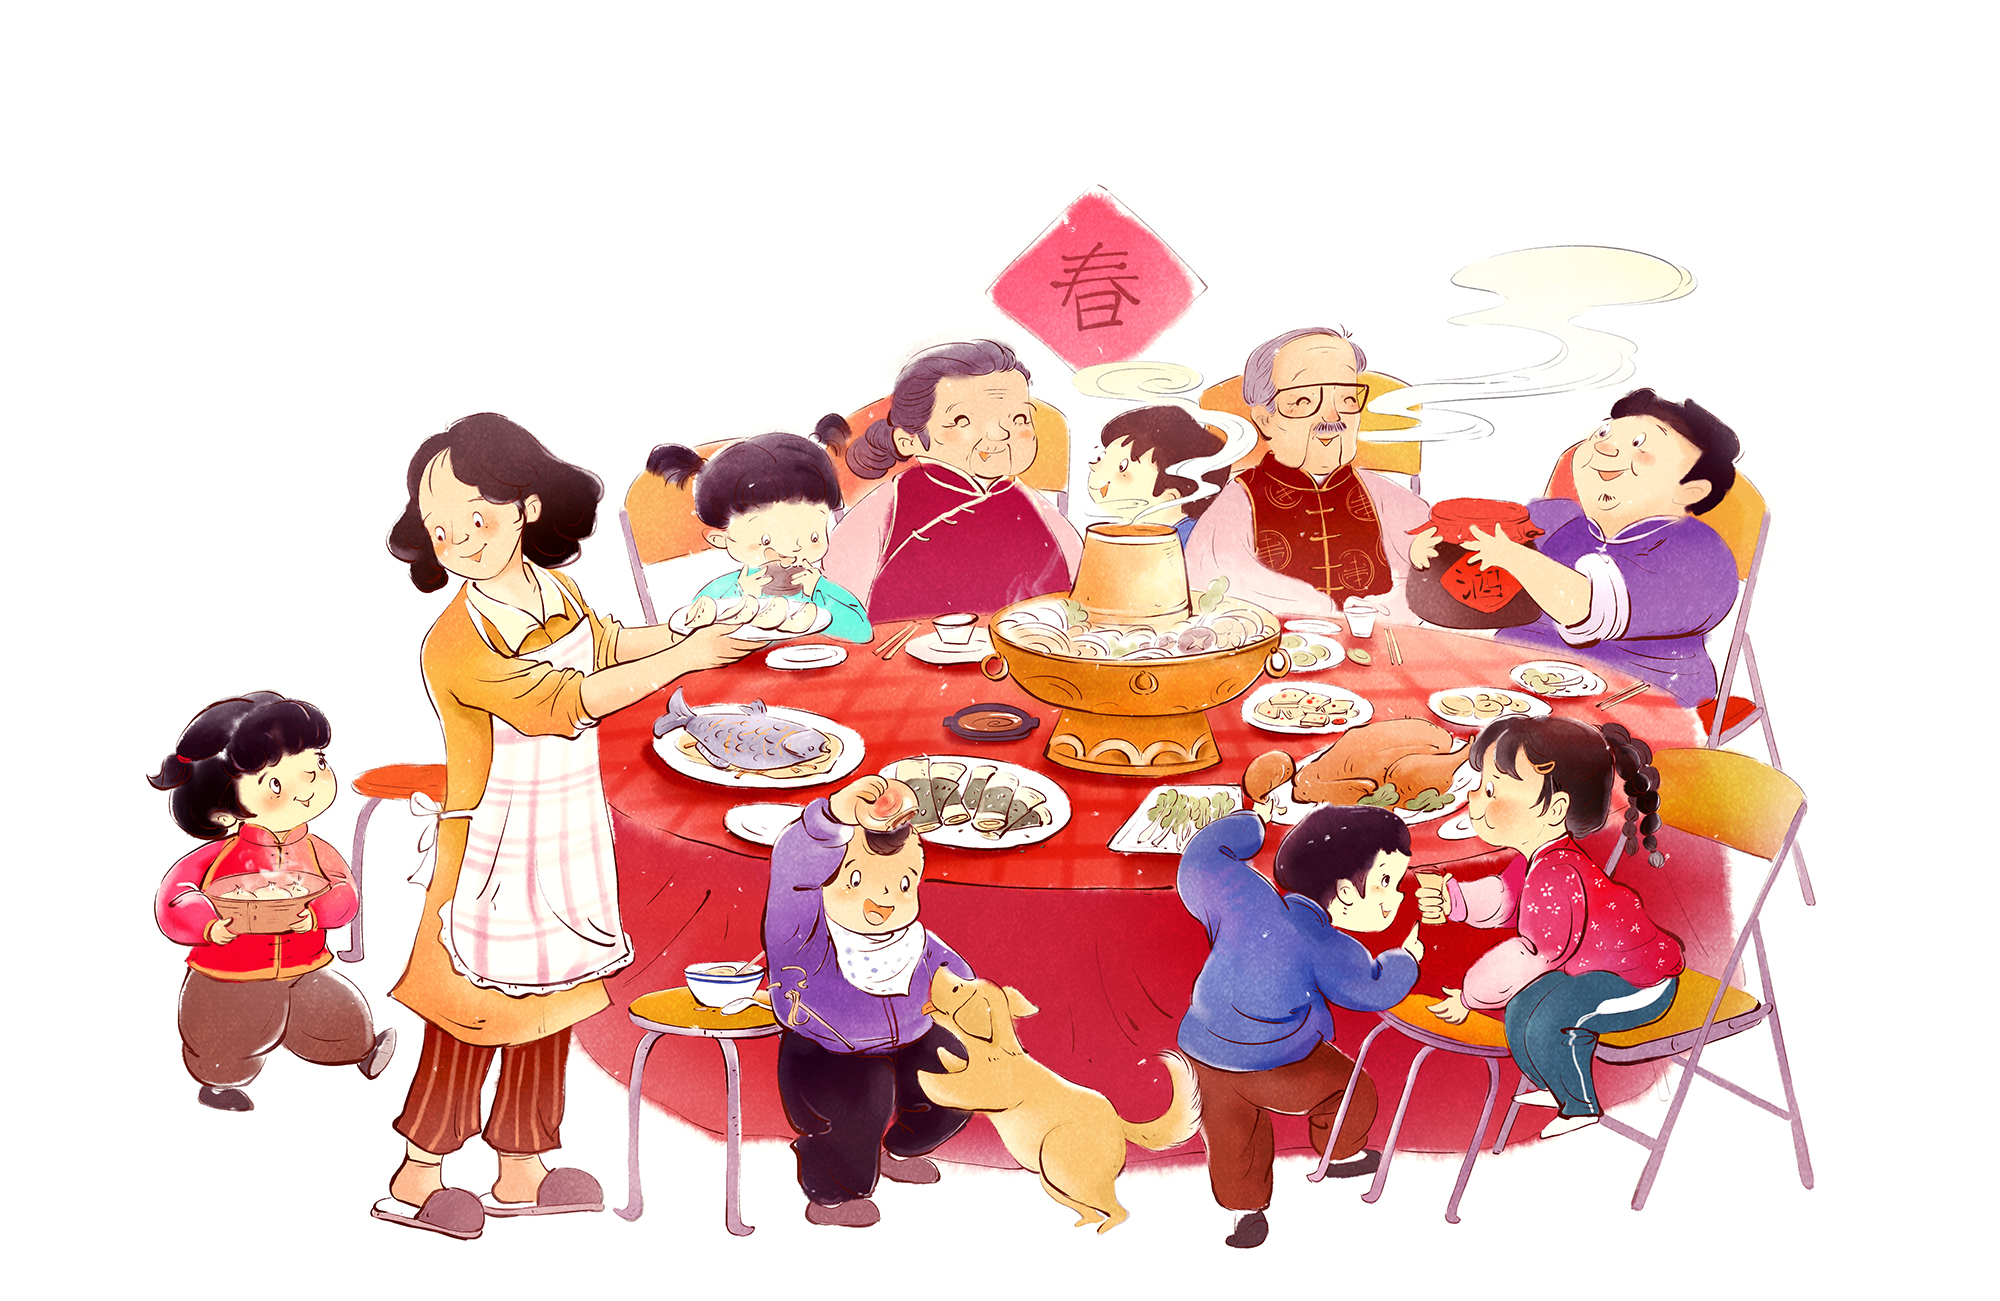 春节图画作品吃饭图片